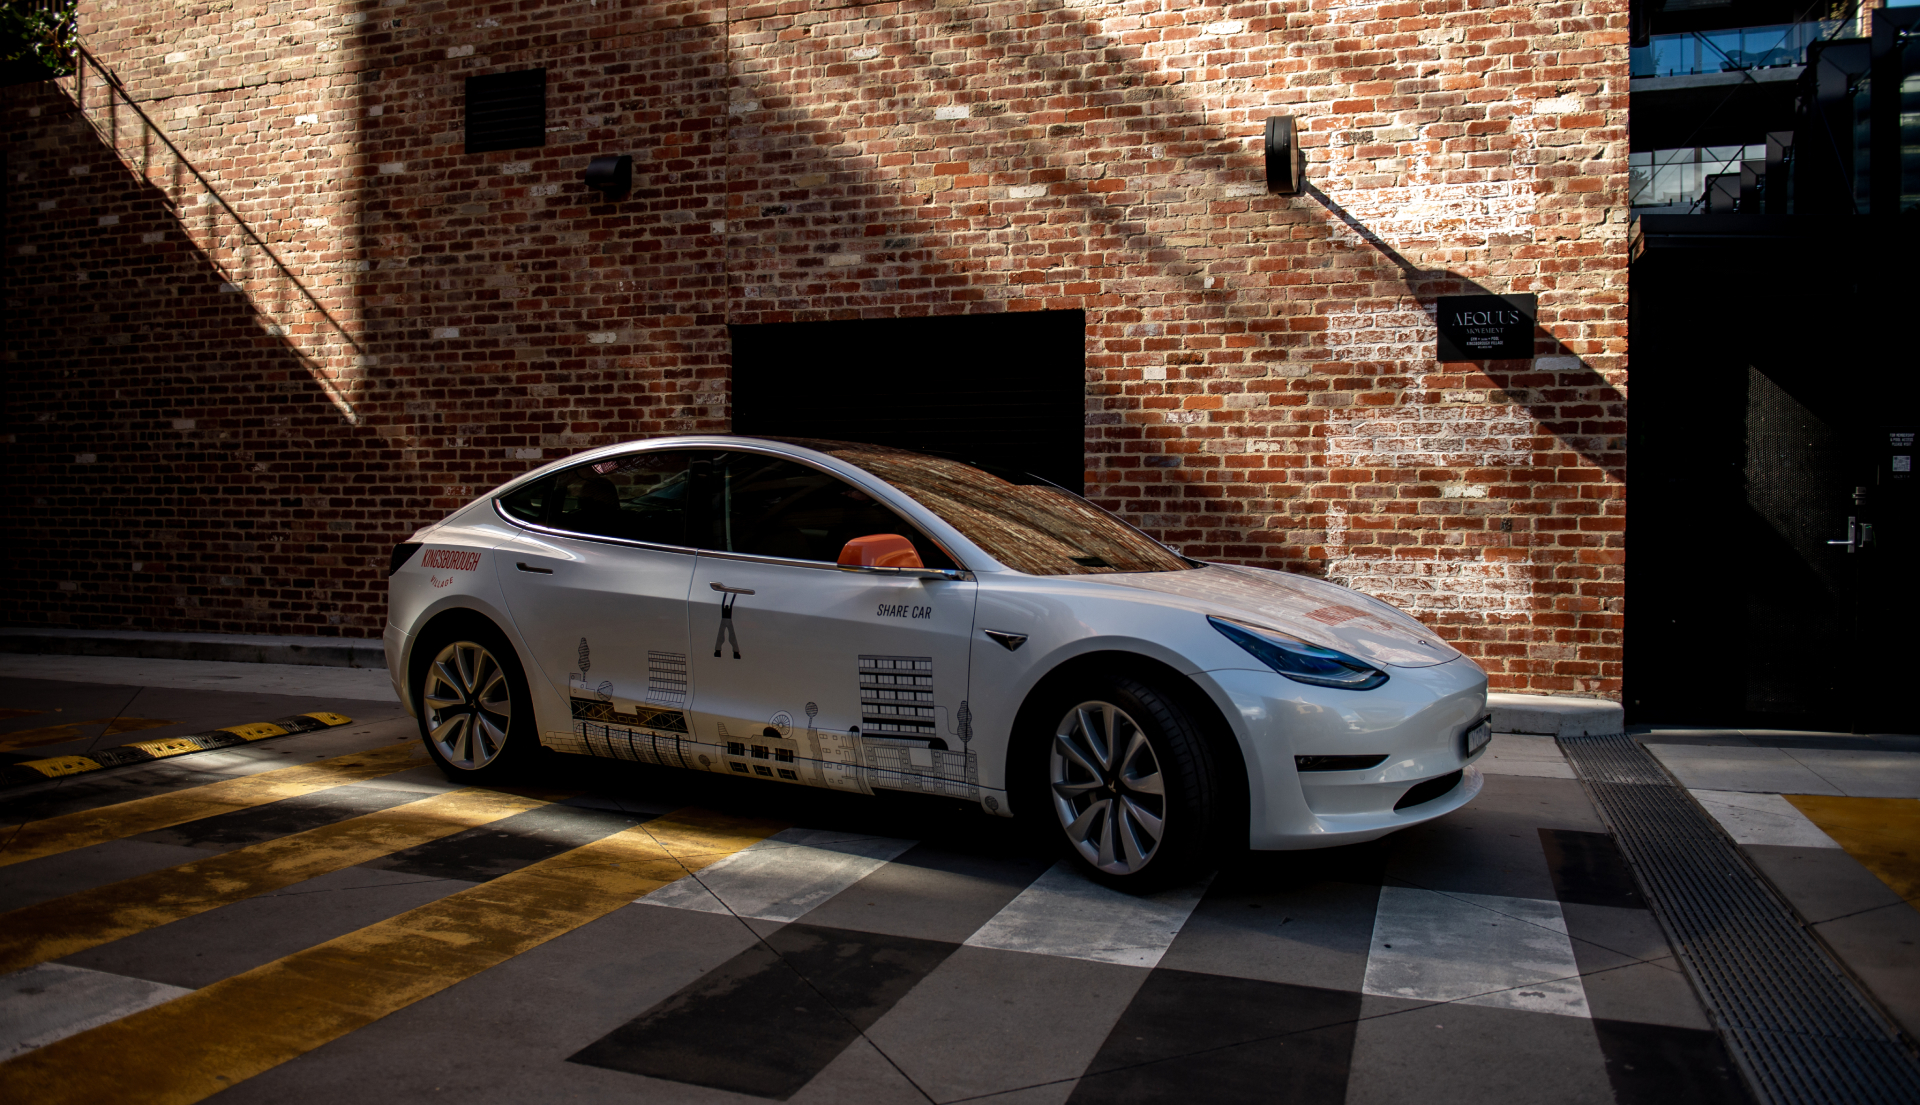 Kingsborough Branded Tesla car in front of Woolstrore brick building.